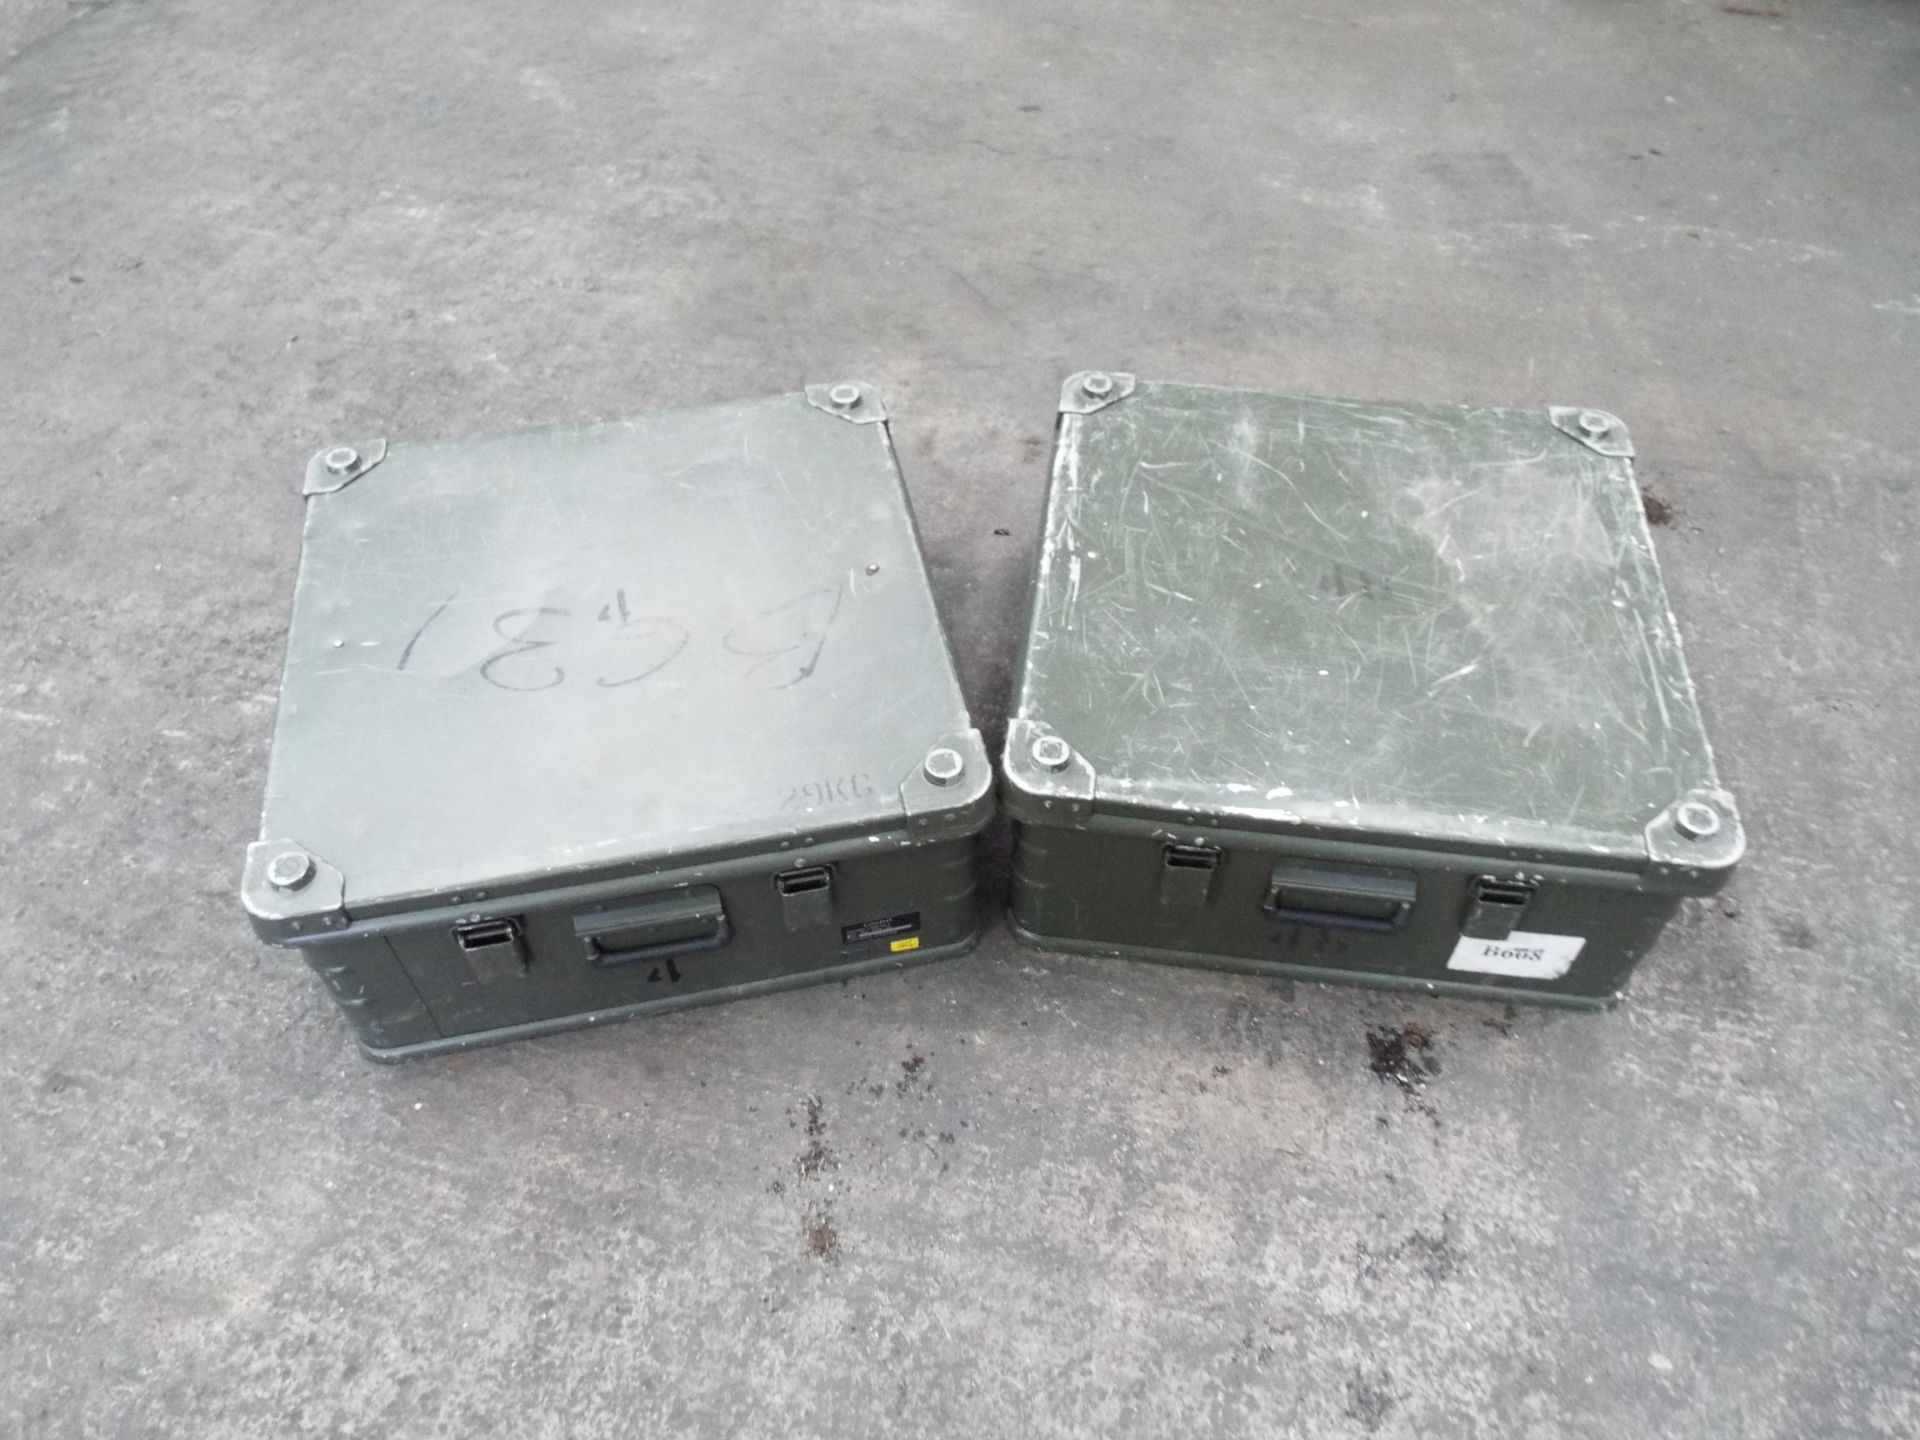 2 x Heavy Duty Zarges Aluminium Cases